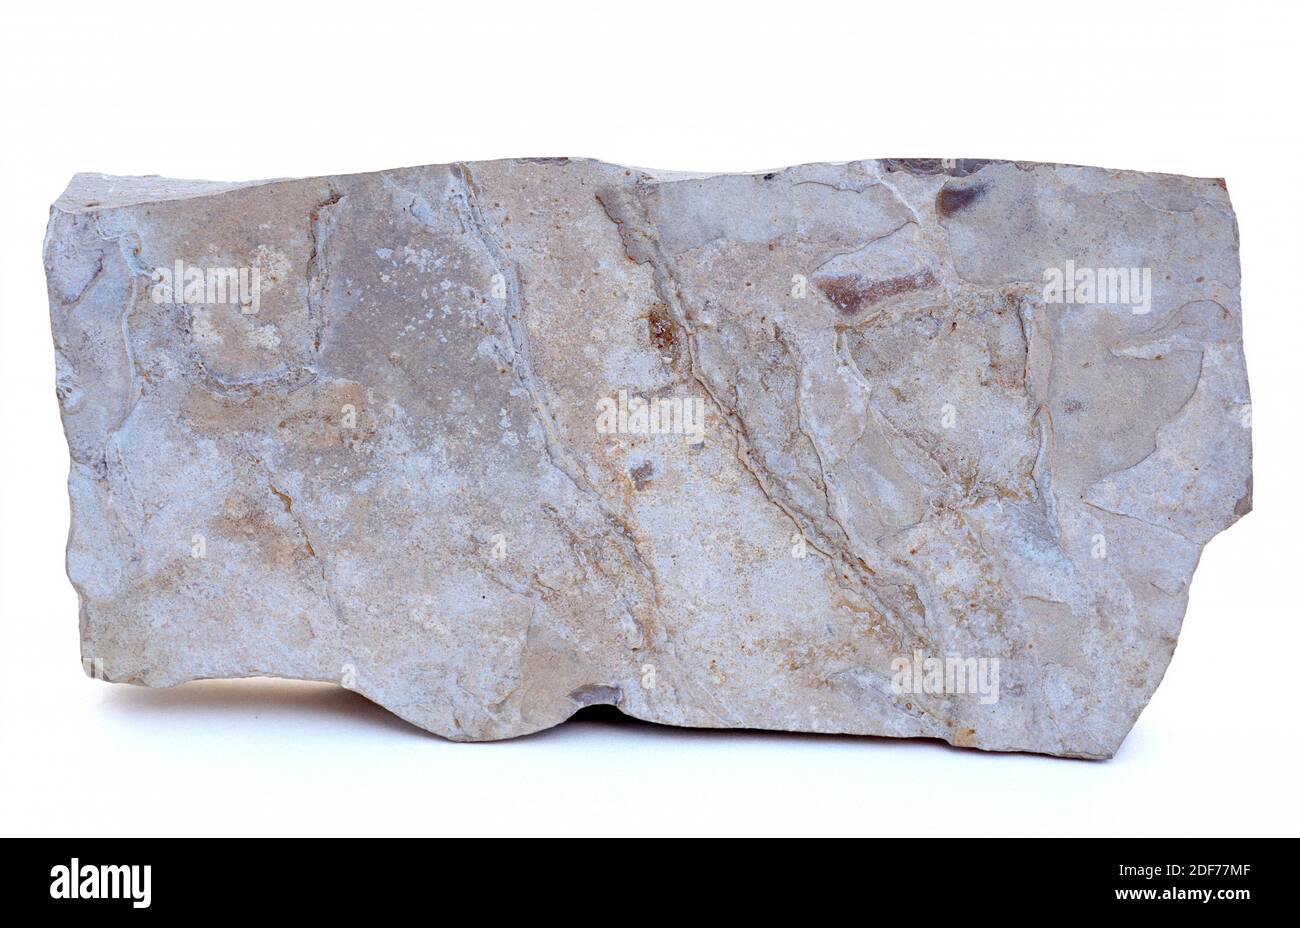 Le calcaire est une roche sédimentaire principalement composée de carbonate de calcium. Exemple. Banque D'Images